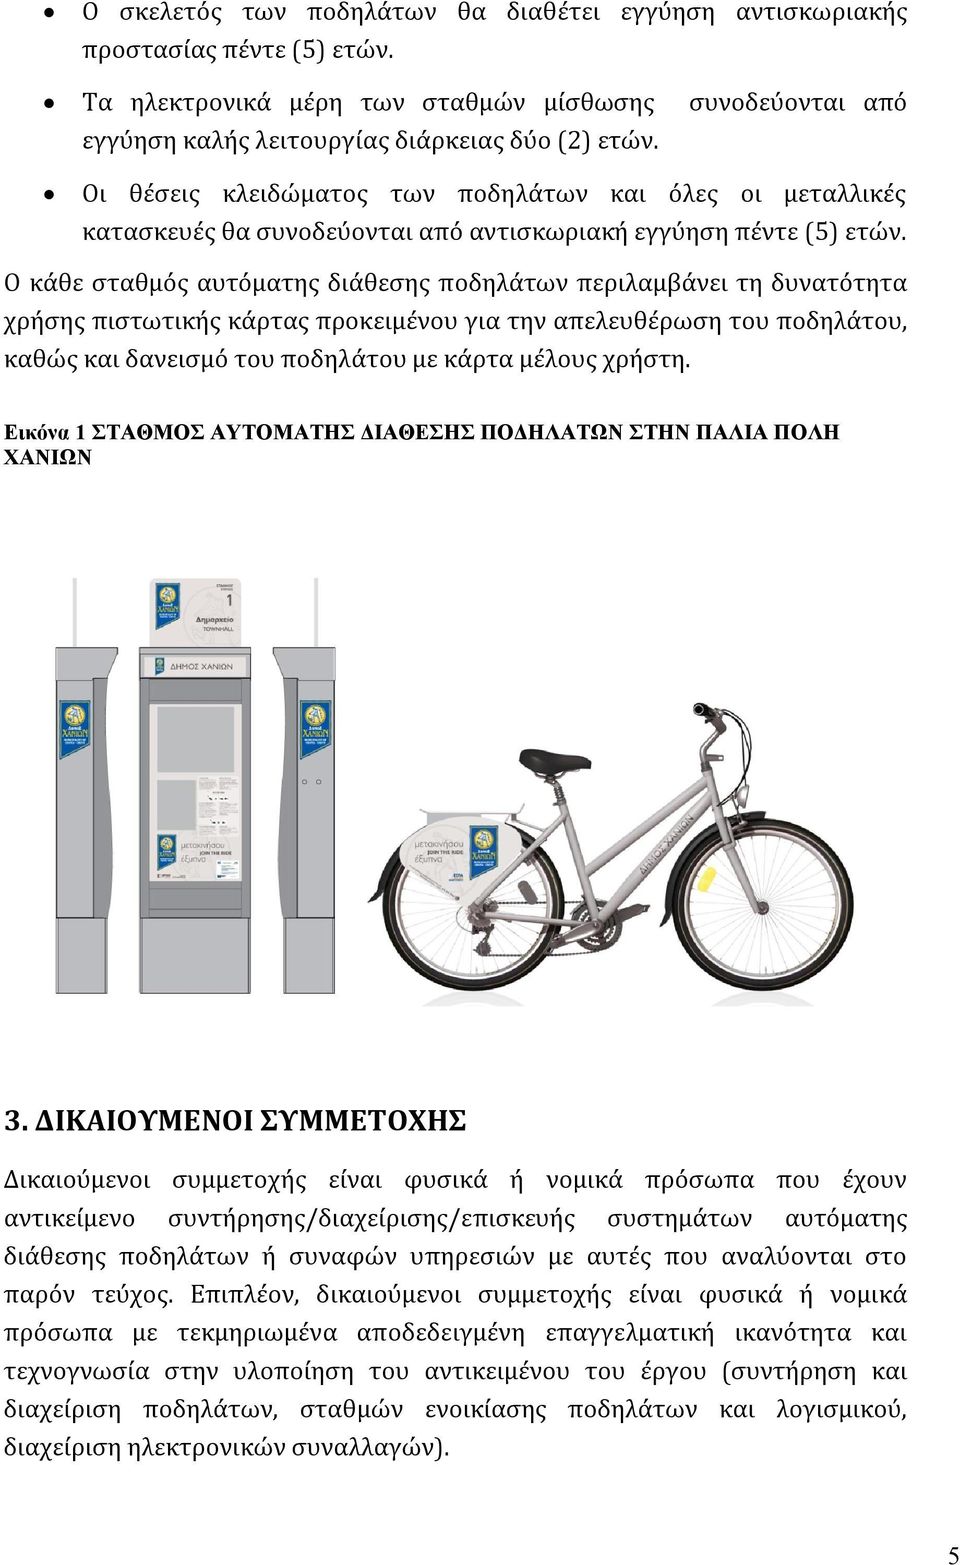 Ο κάθε σταθμός αυτόματης διάθεσης ποδηλάτων περιλαμβάνει τη δυνατότητα χρήσης πιστωτικής κάρτας προκειμένου για την απελευθέρωση του ποδηλάτου, καθώς και δανεισμό του ποδηλάτου με κάρτα μέλους χρήστη.